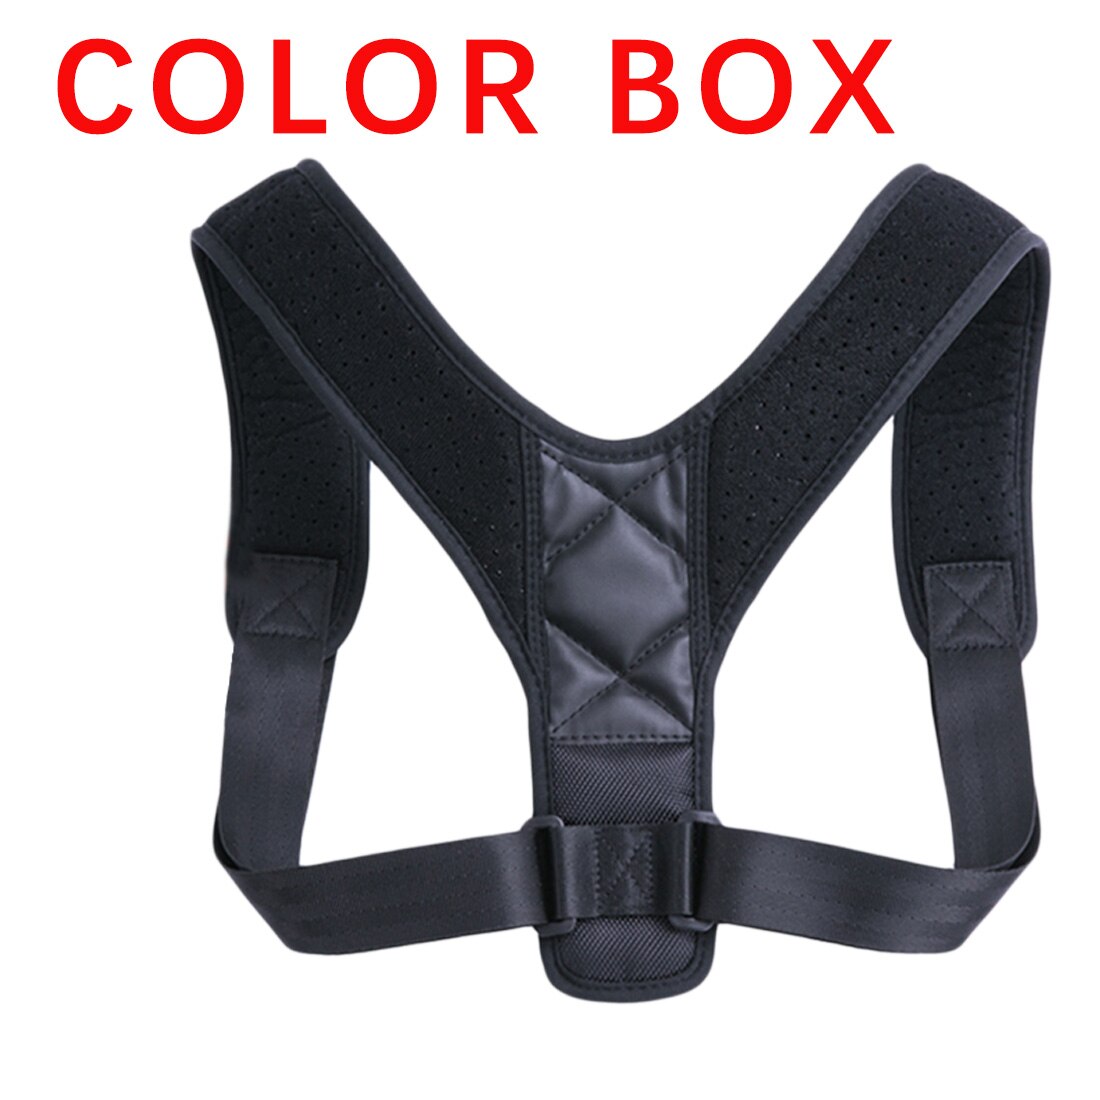 Soporte, cinturón de sujeción ajustable volver Corrector de postura corsé para encorvado y encorvadura ajustable entrenador: Whit Colorbox